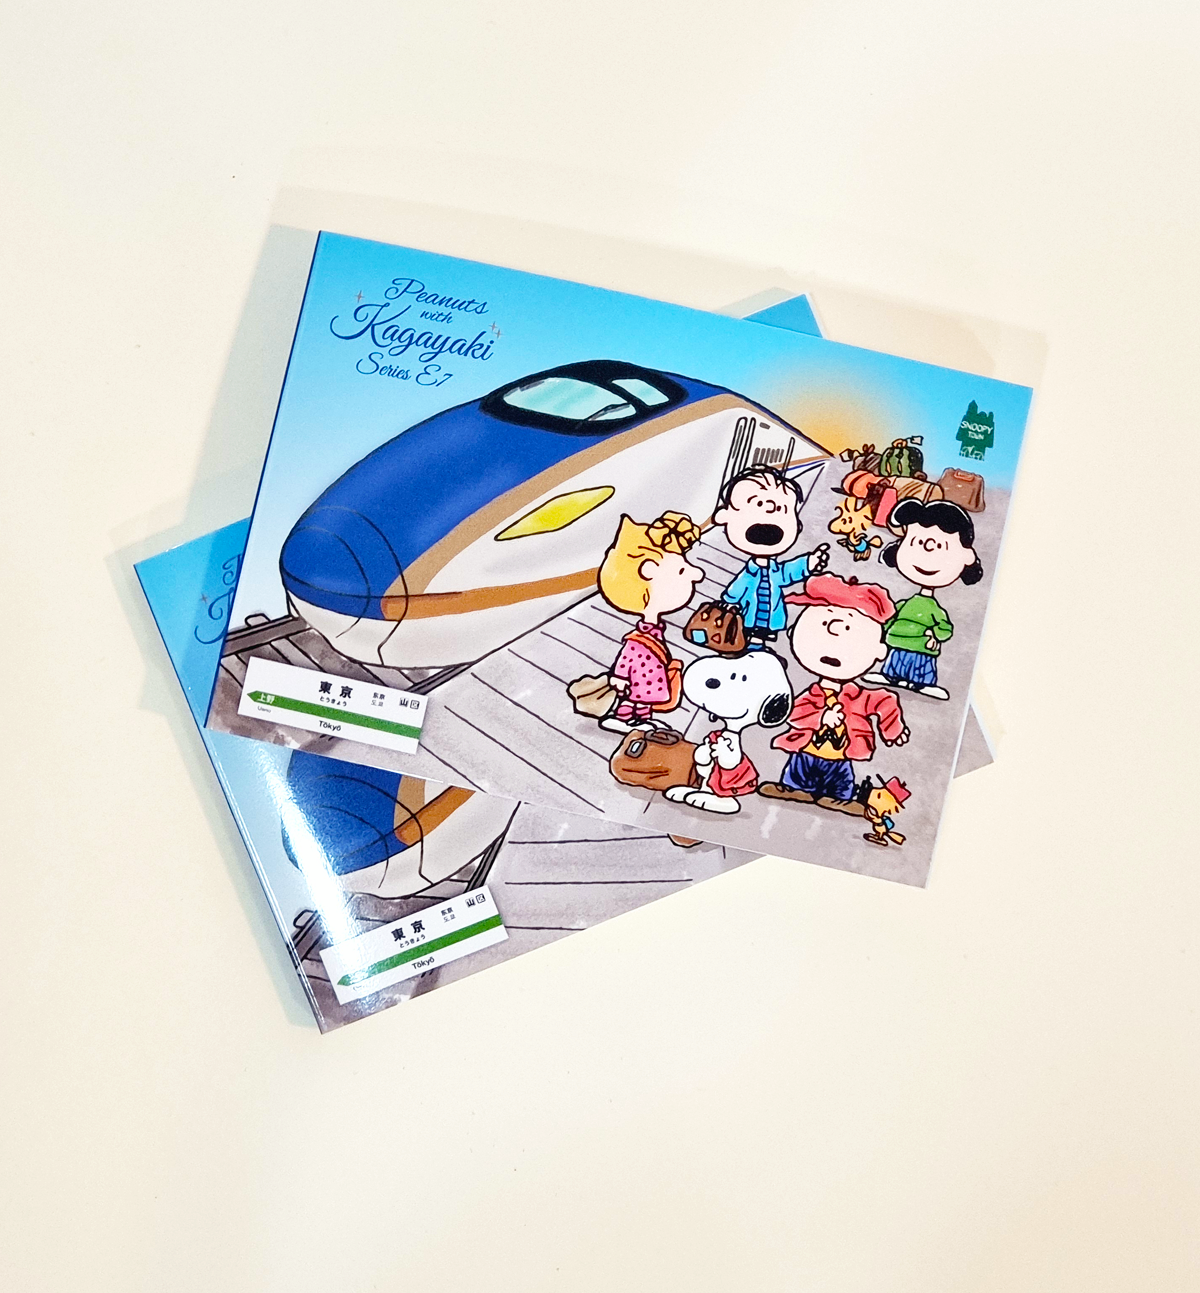 Snoopy With Kagayaki Memopad - Limited Edition [Serie E7]